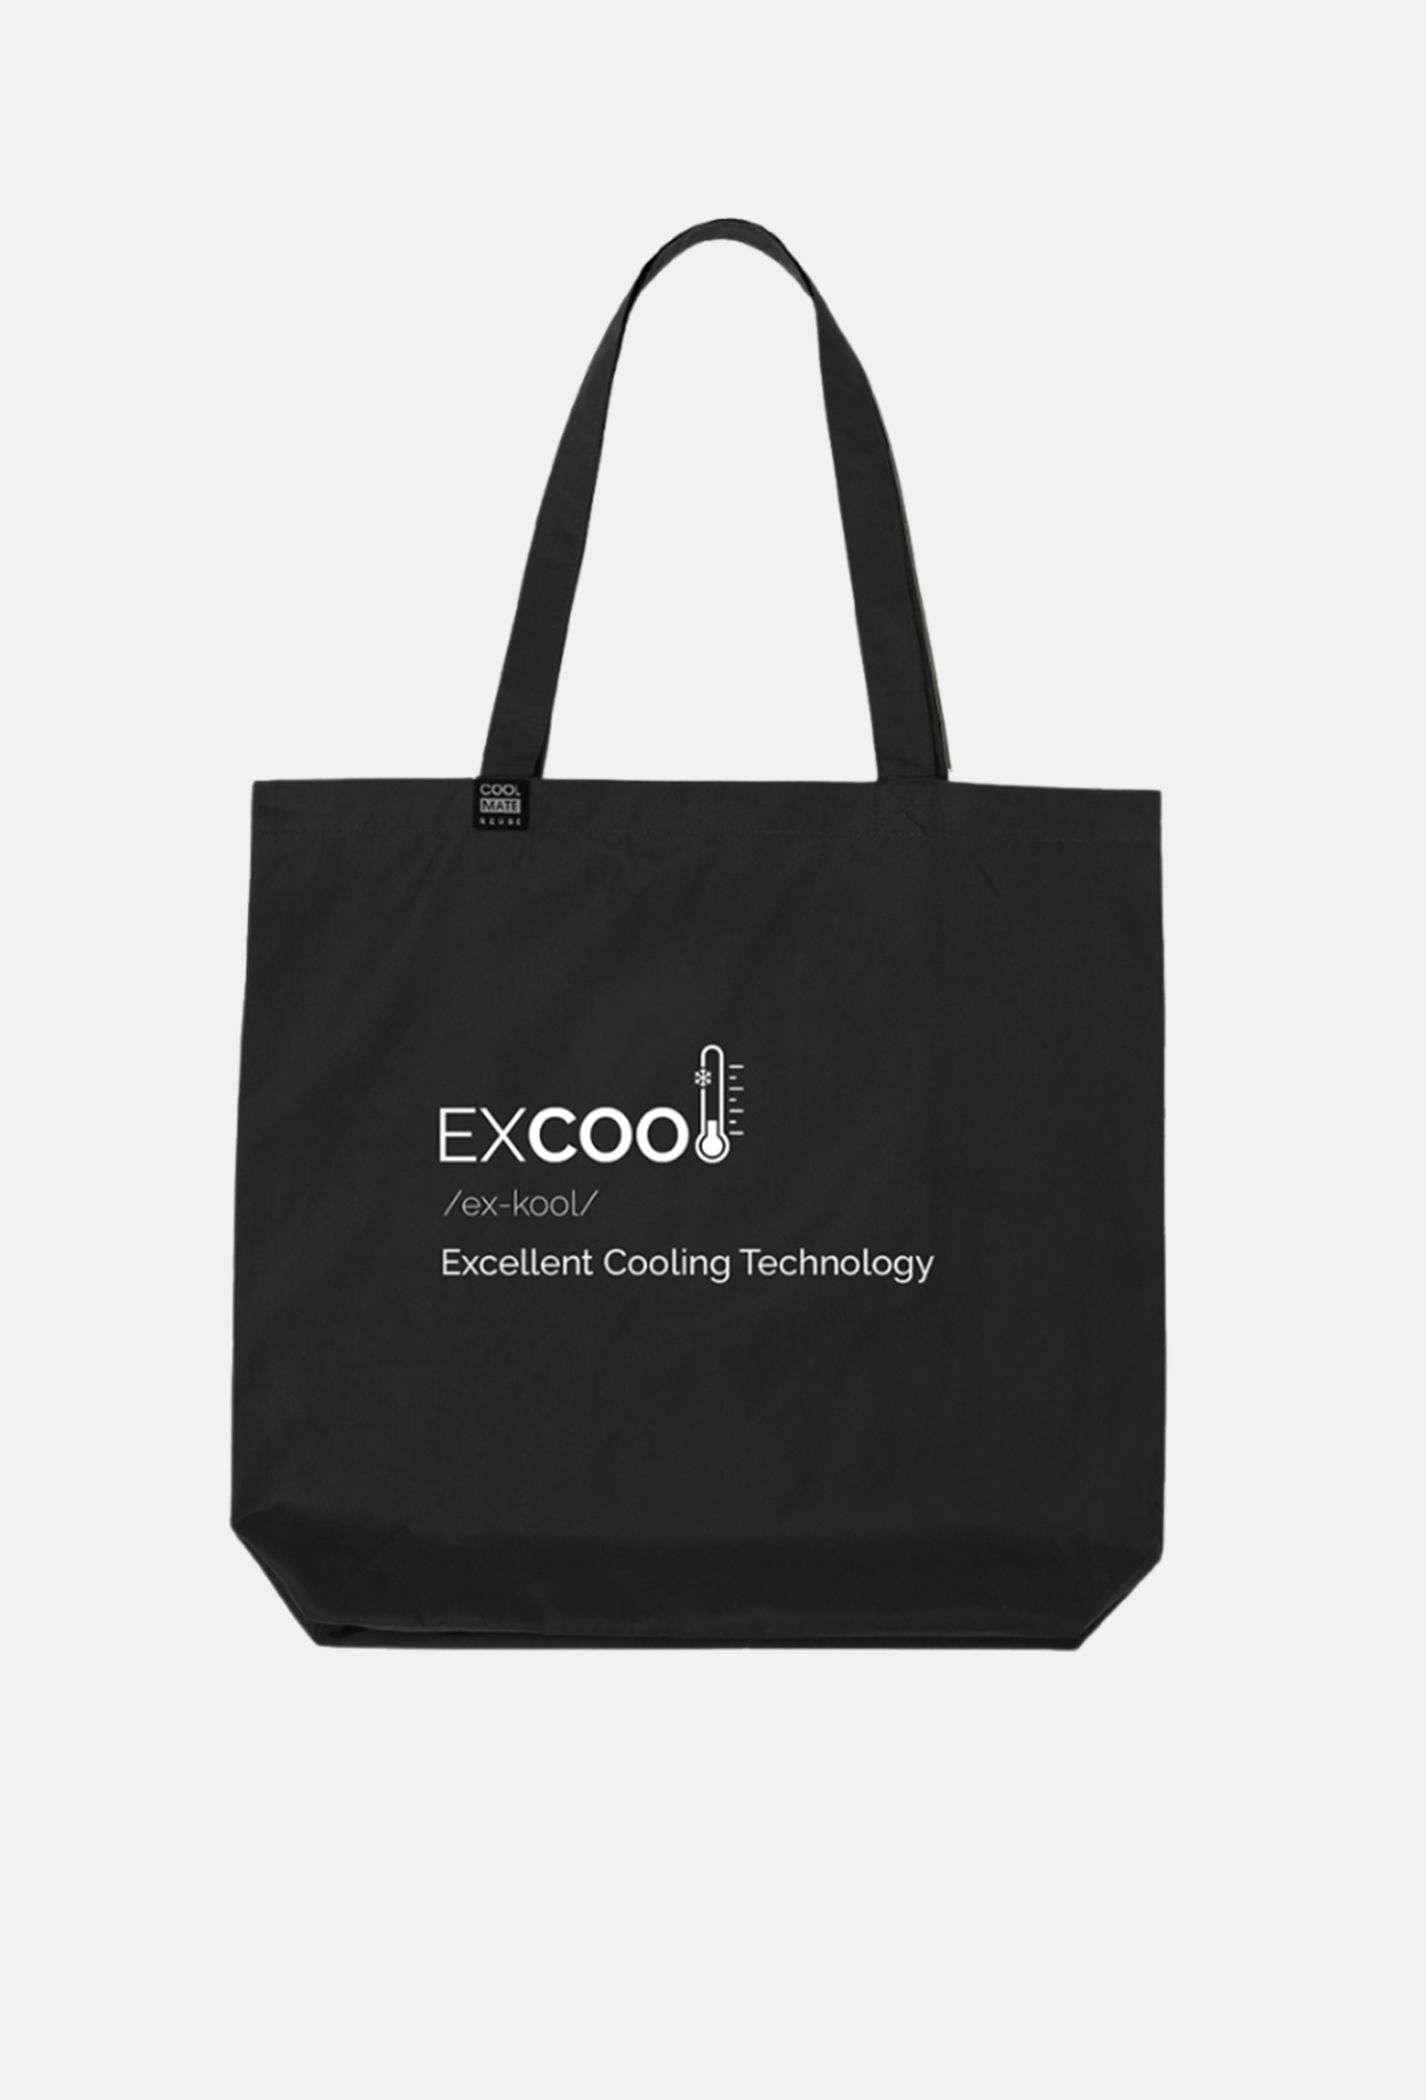 [9-11/9 MUA 3 GIẢM 7%] COOLMATE - Túi Clean Bag in Excool thời trang, tiện lợi (màu ngẫu nhiên) từ...